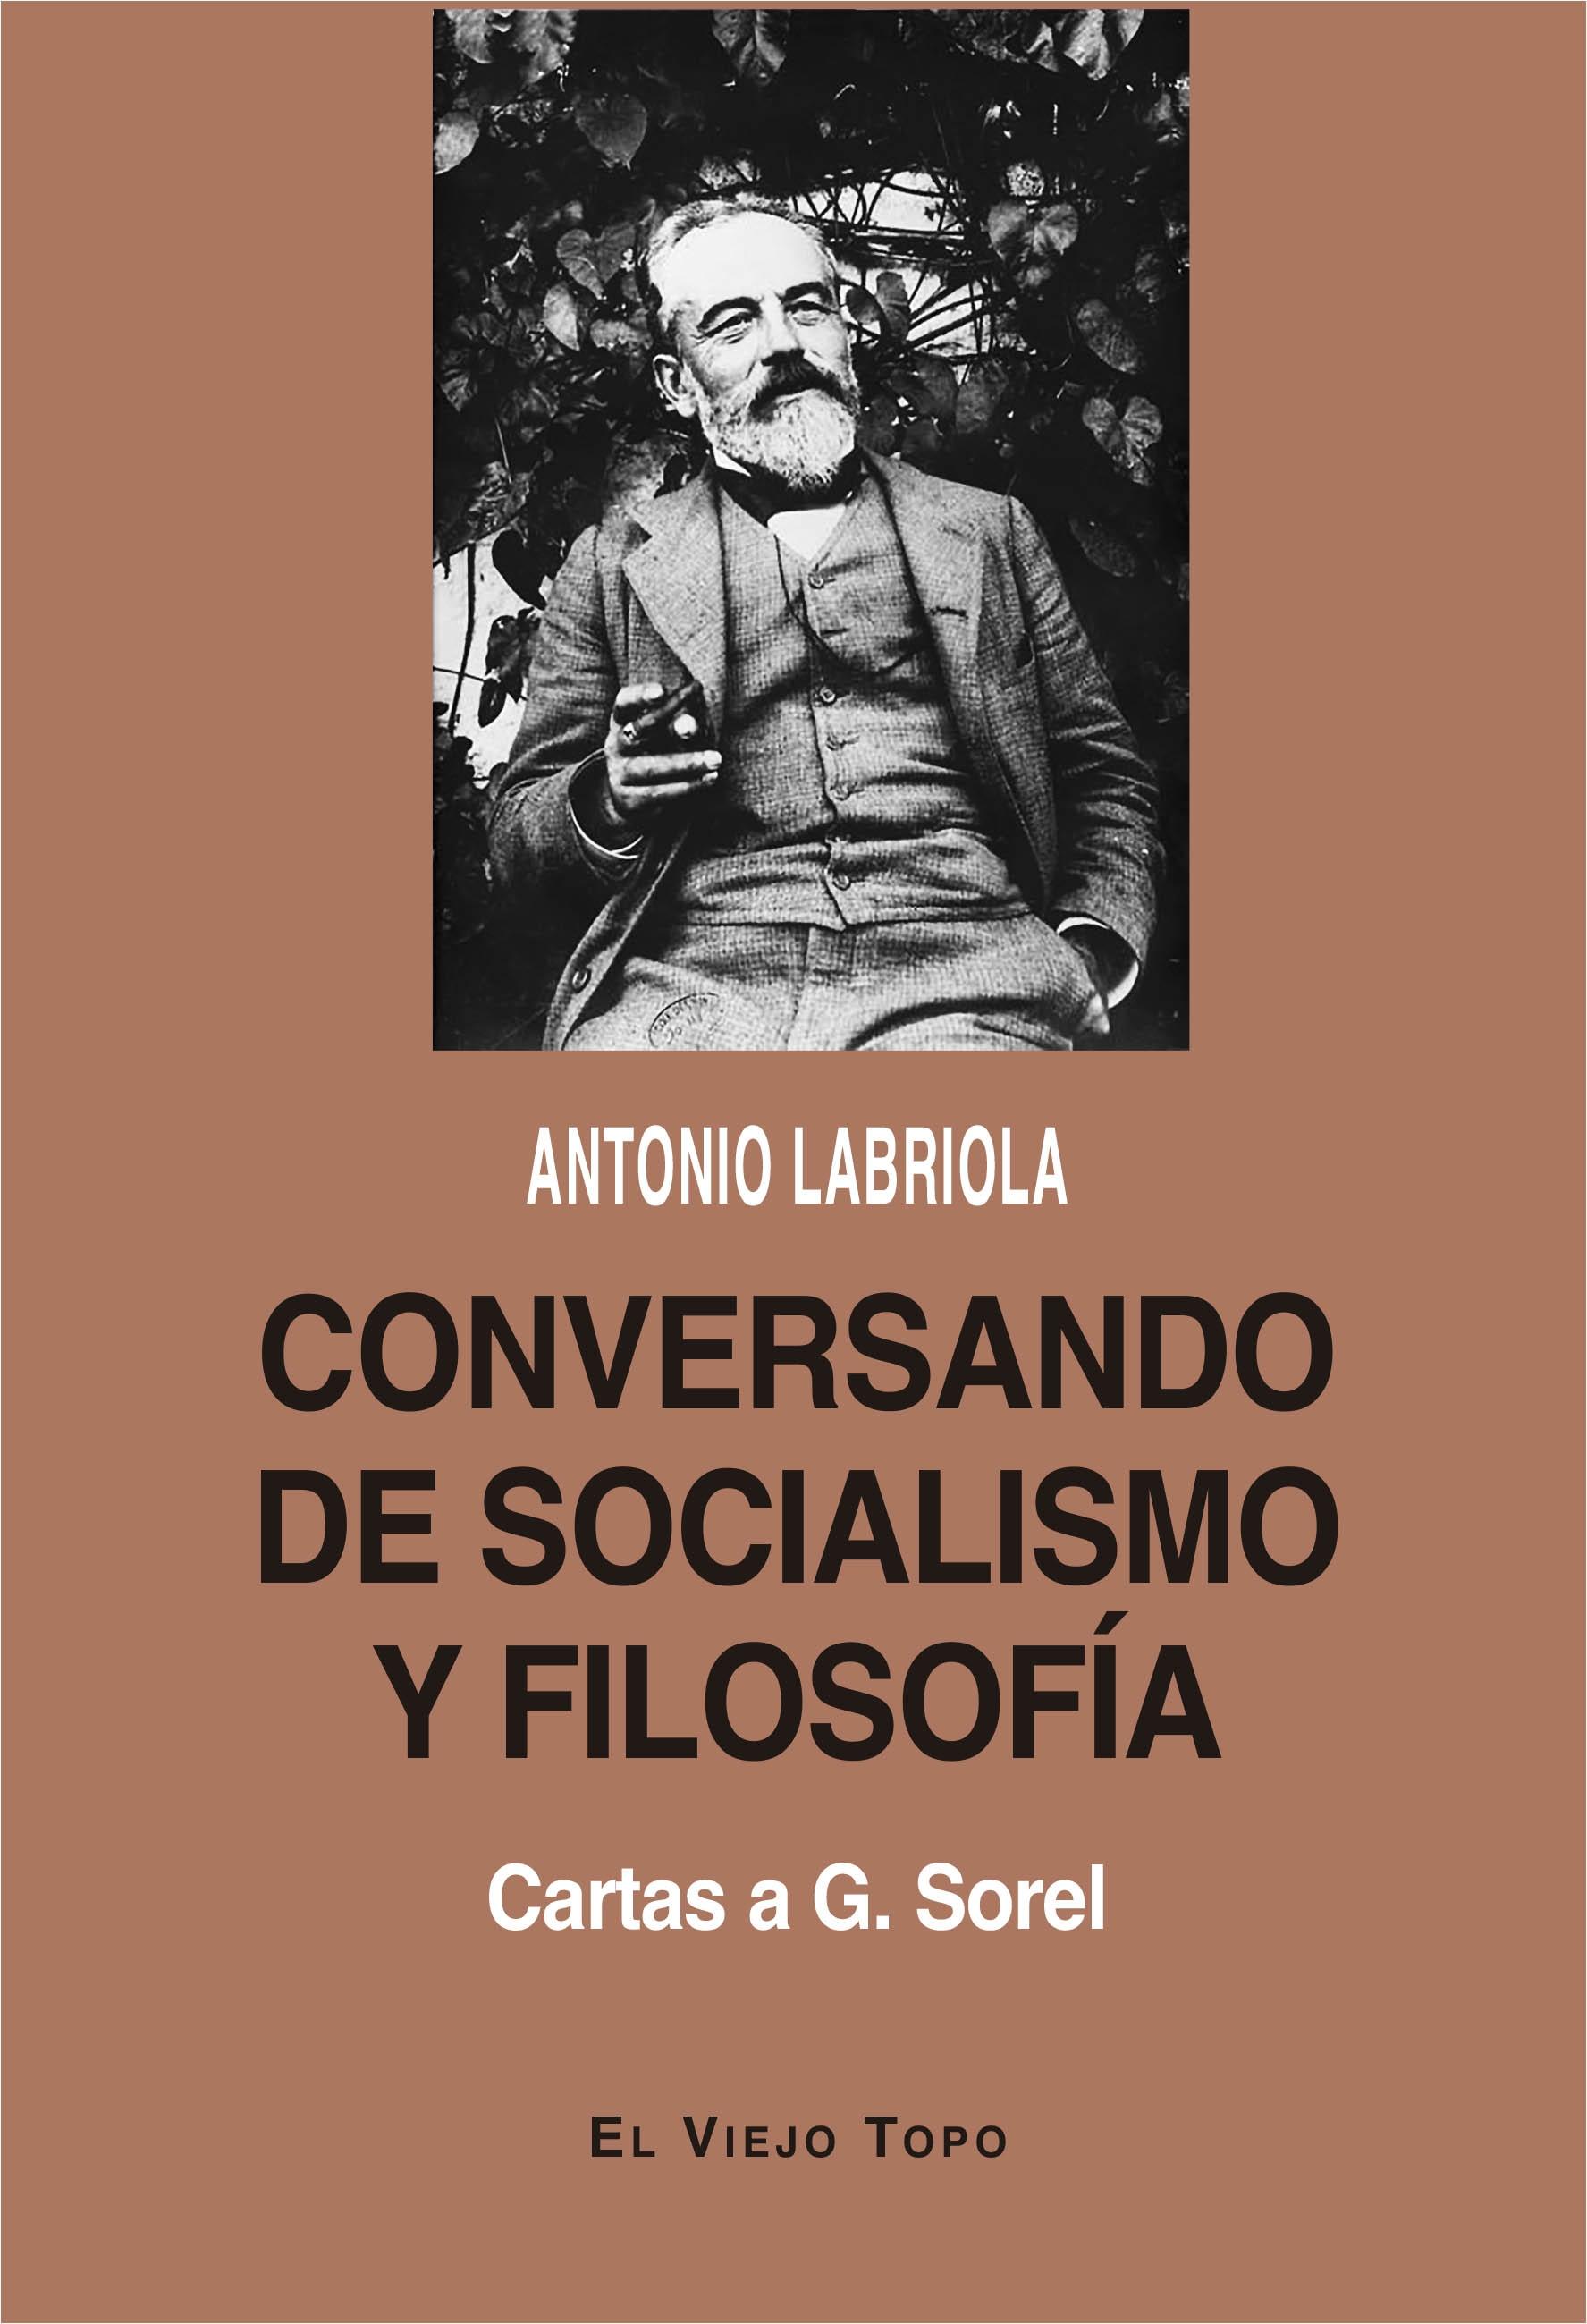 Conversando de Socialismo y Filosofía "Cartas a G. Sorel"